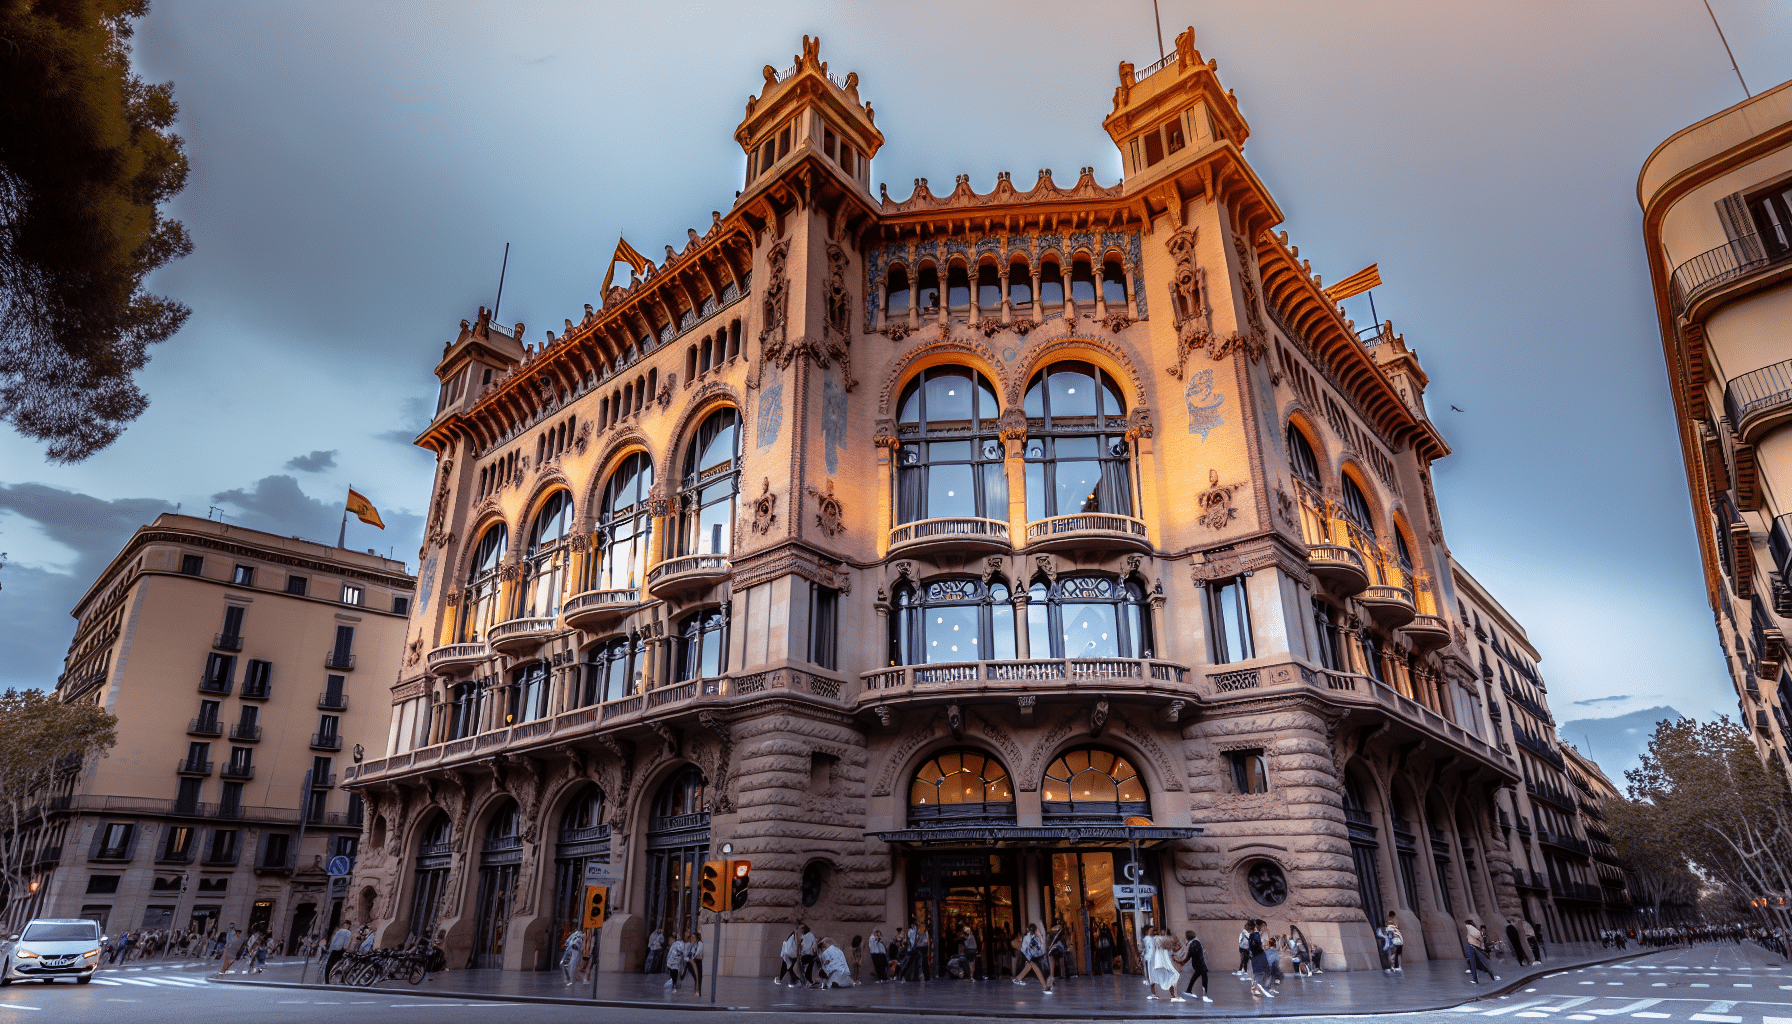 Palau de la Música, an architectural marvel hosting concerts in Barcelona